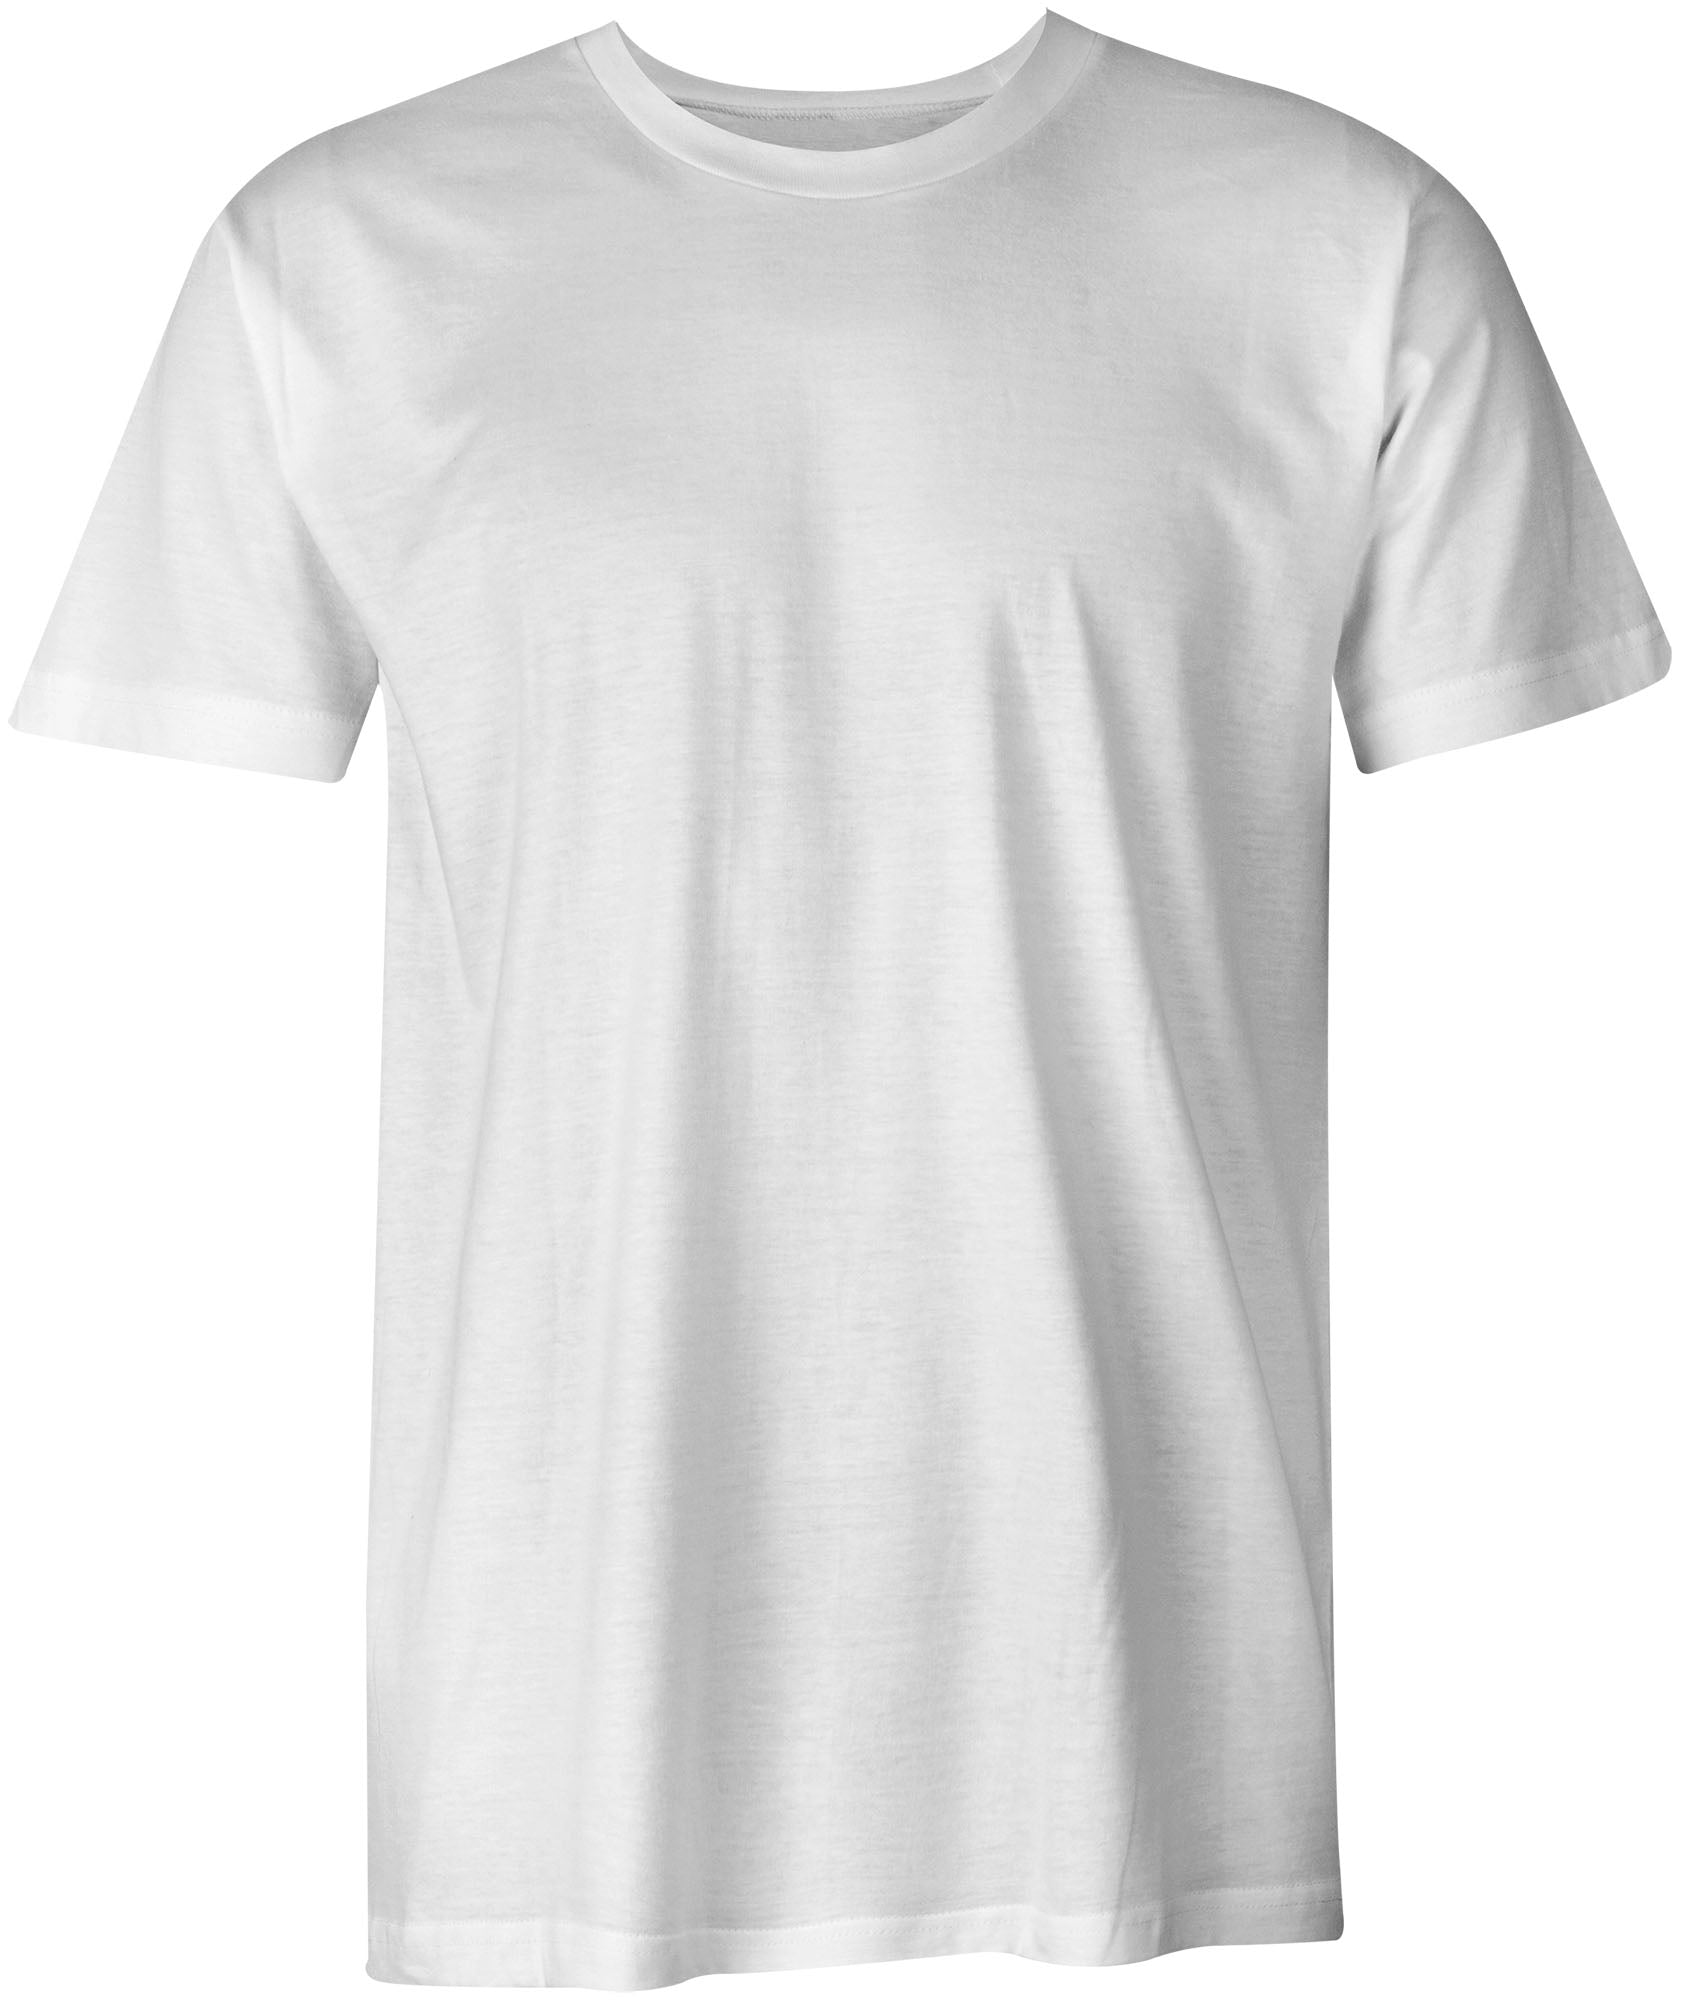 Design Online Single Sided Custom T-Shirt